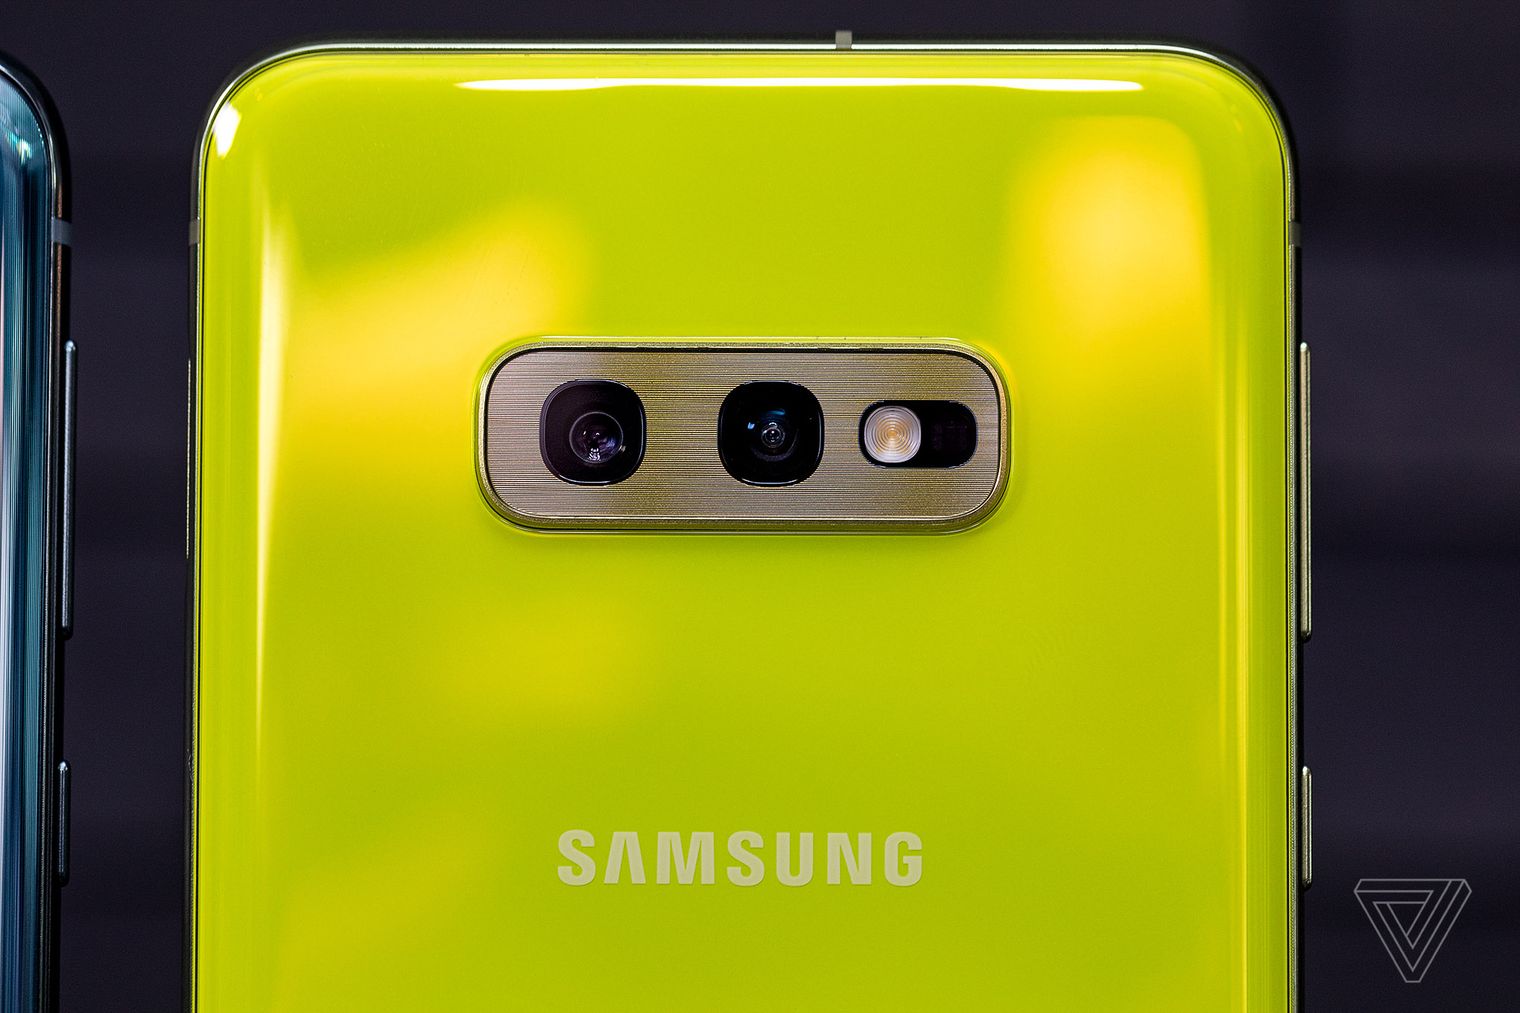 Samsung Galaxy S10e: Hiệu năng của S10, màn hình Full HD+, camera kép